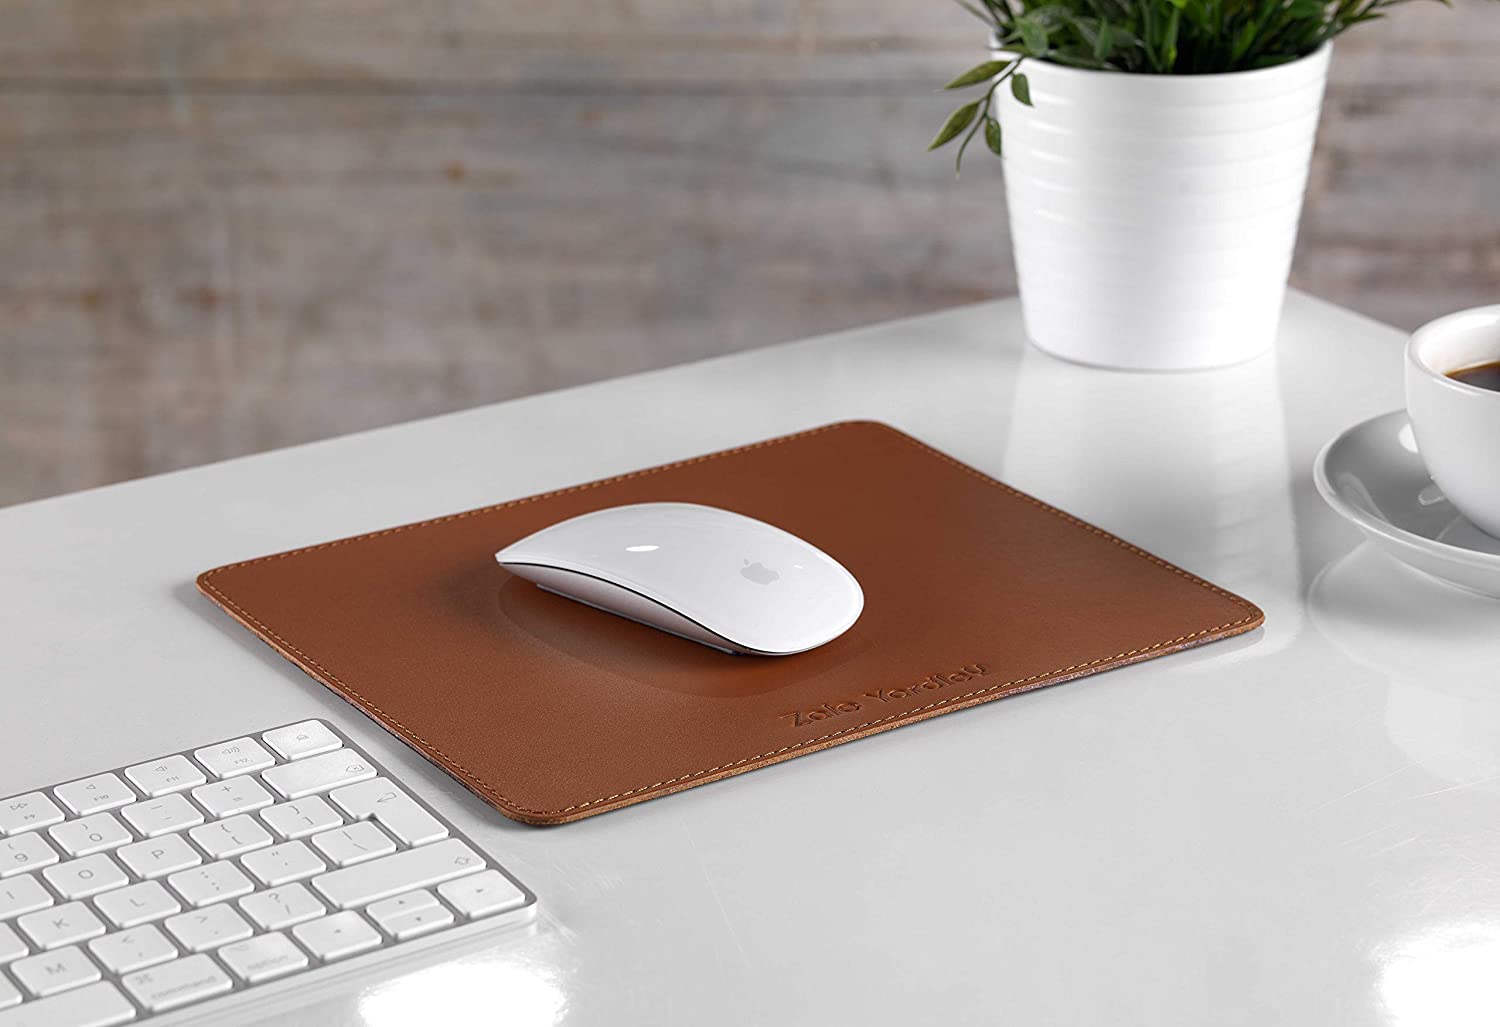 Macbook Transparent avec motif pomme Thème Tapis rectangulaire-Tapis souris et un tapis de souris pour tous les iMac Mac ou iPad utilisateur ou propriétaire Design et fonctionnel-Tapis de souris idéal pour la fête des pè 